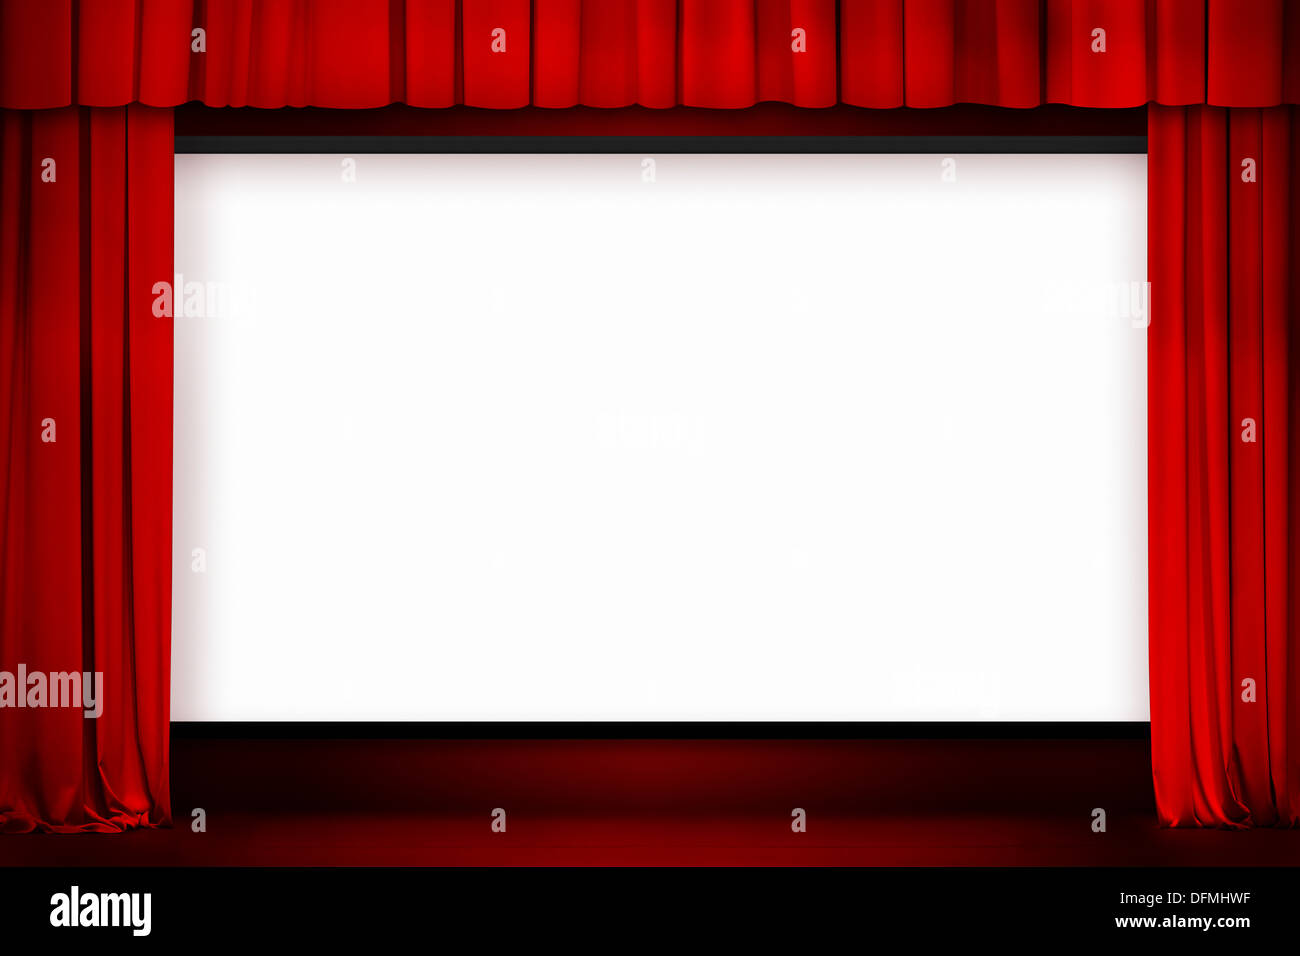 Kinoleinwand mit offenen roten Vorhang Stockfoto